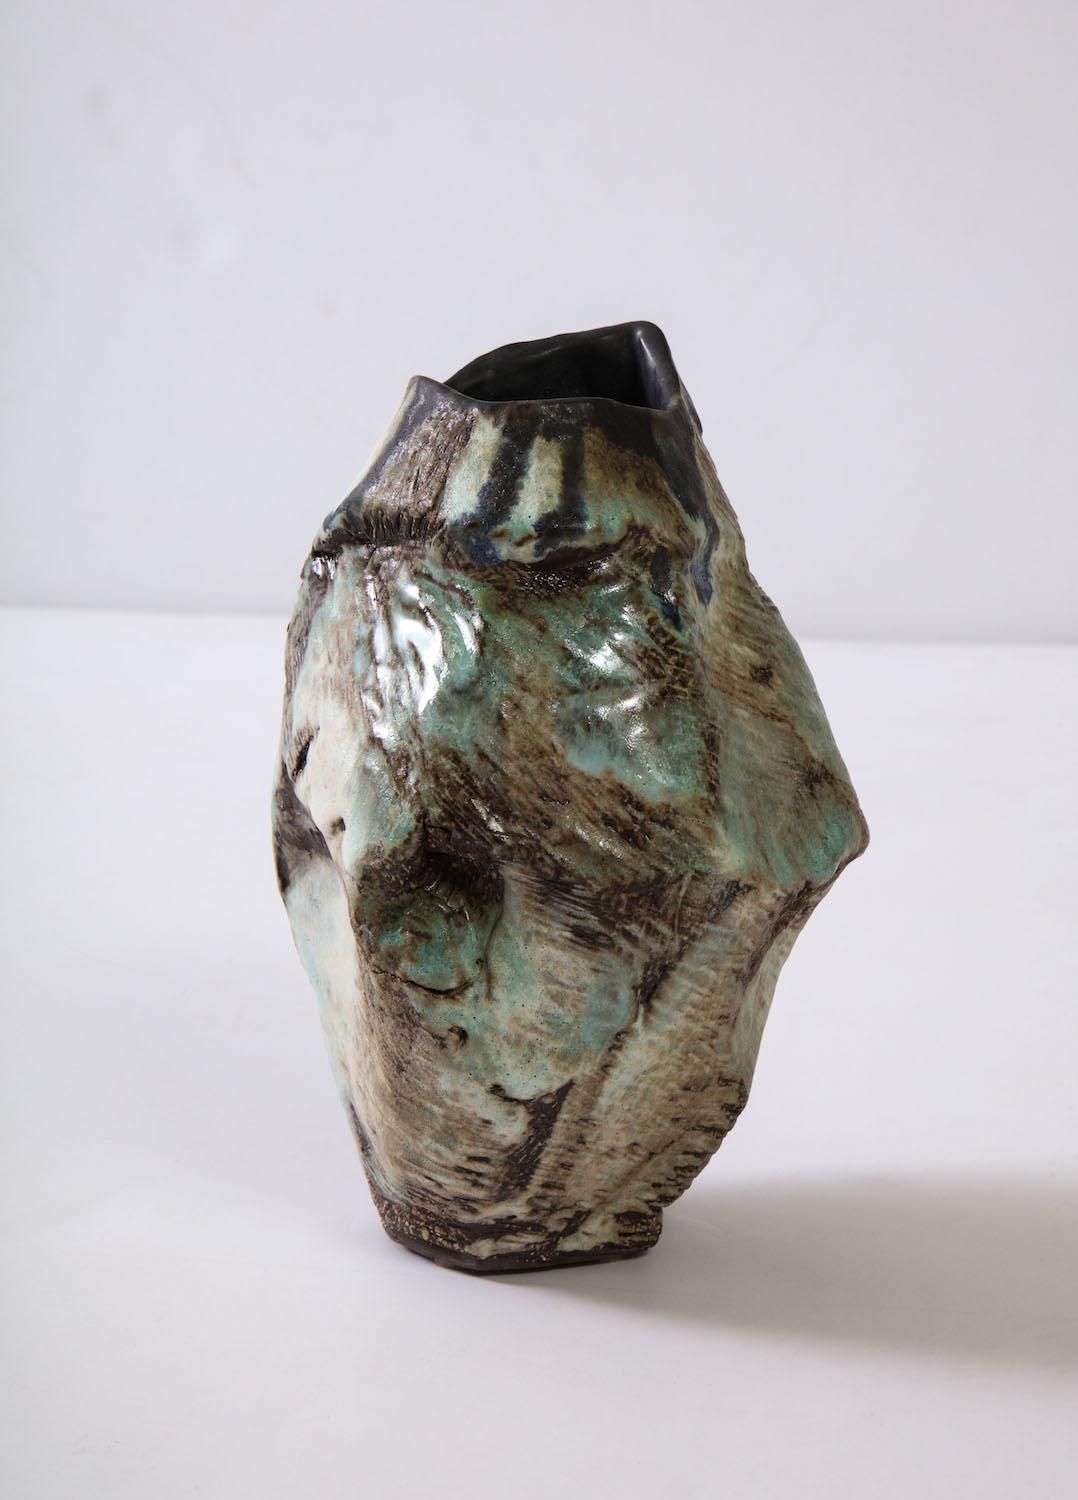 American Sculptural Vase #6 by Dena Zemsky